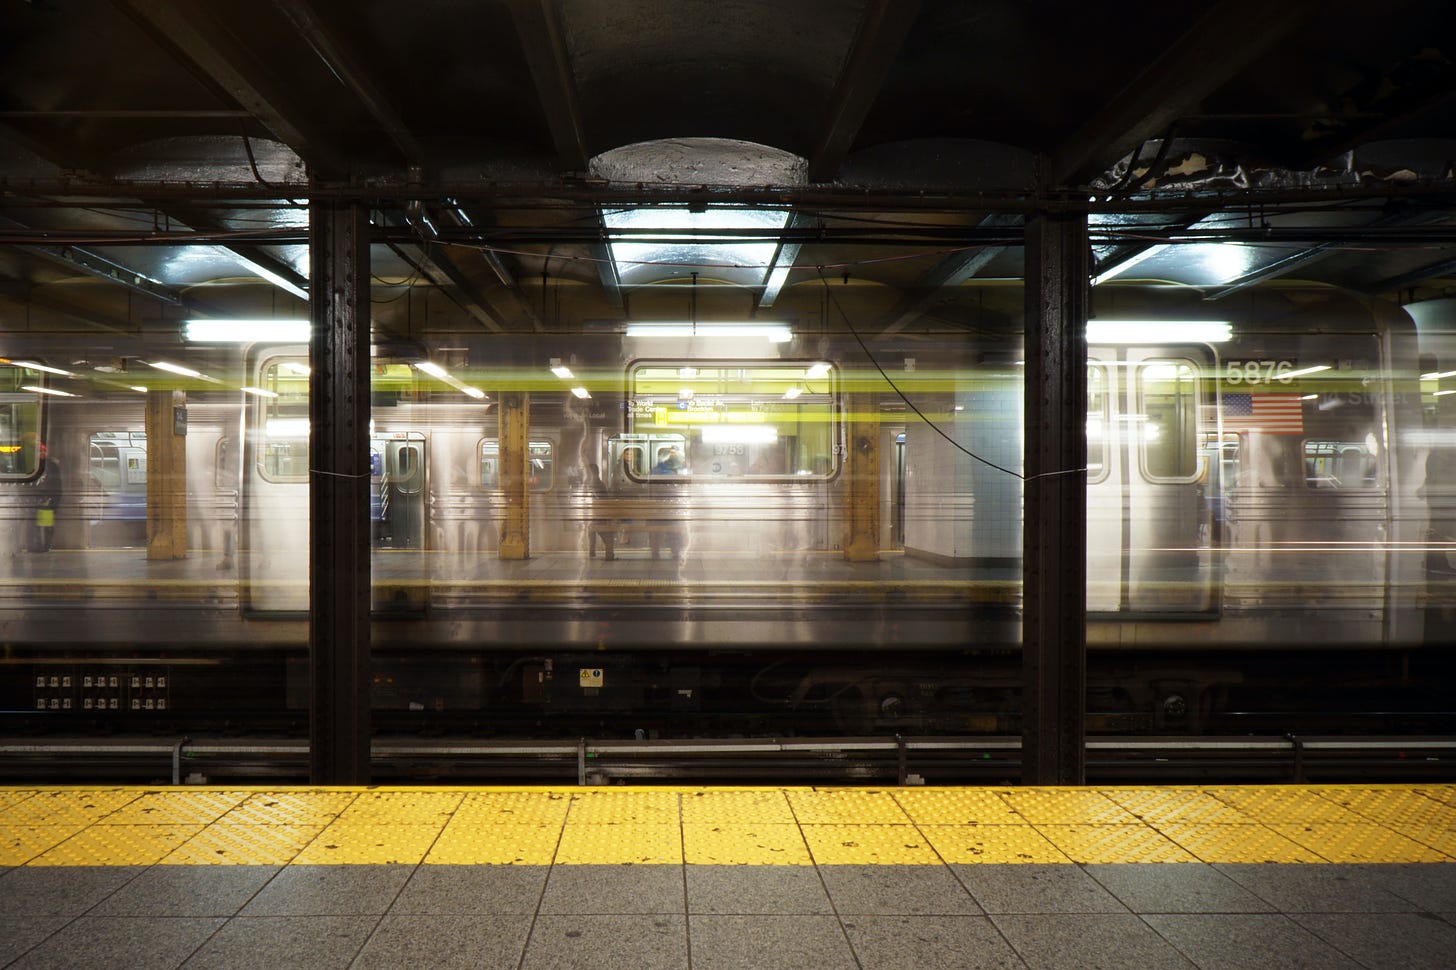 Photo of an underground subway platform, with blurring of train speeding by